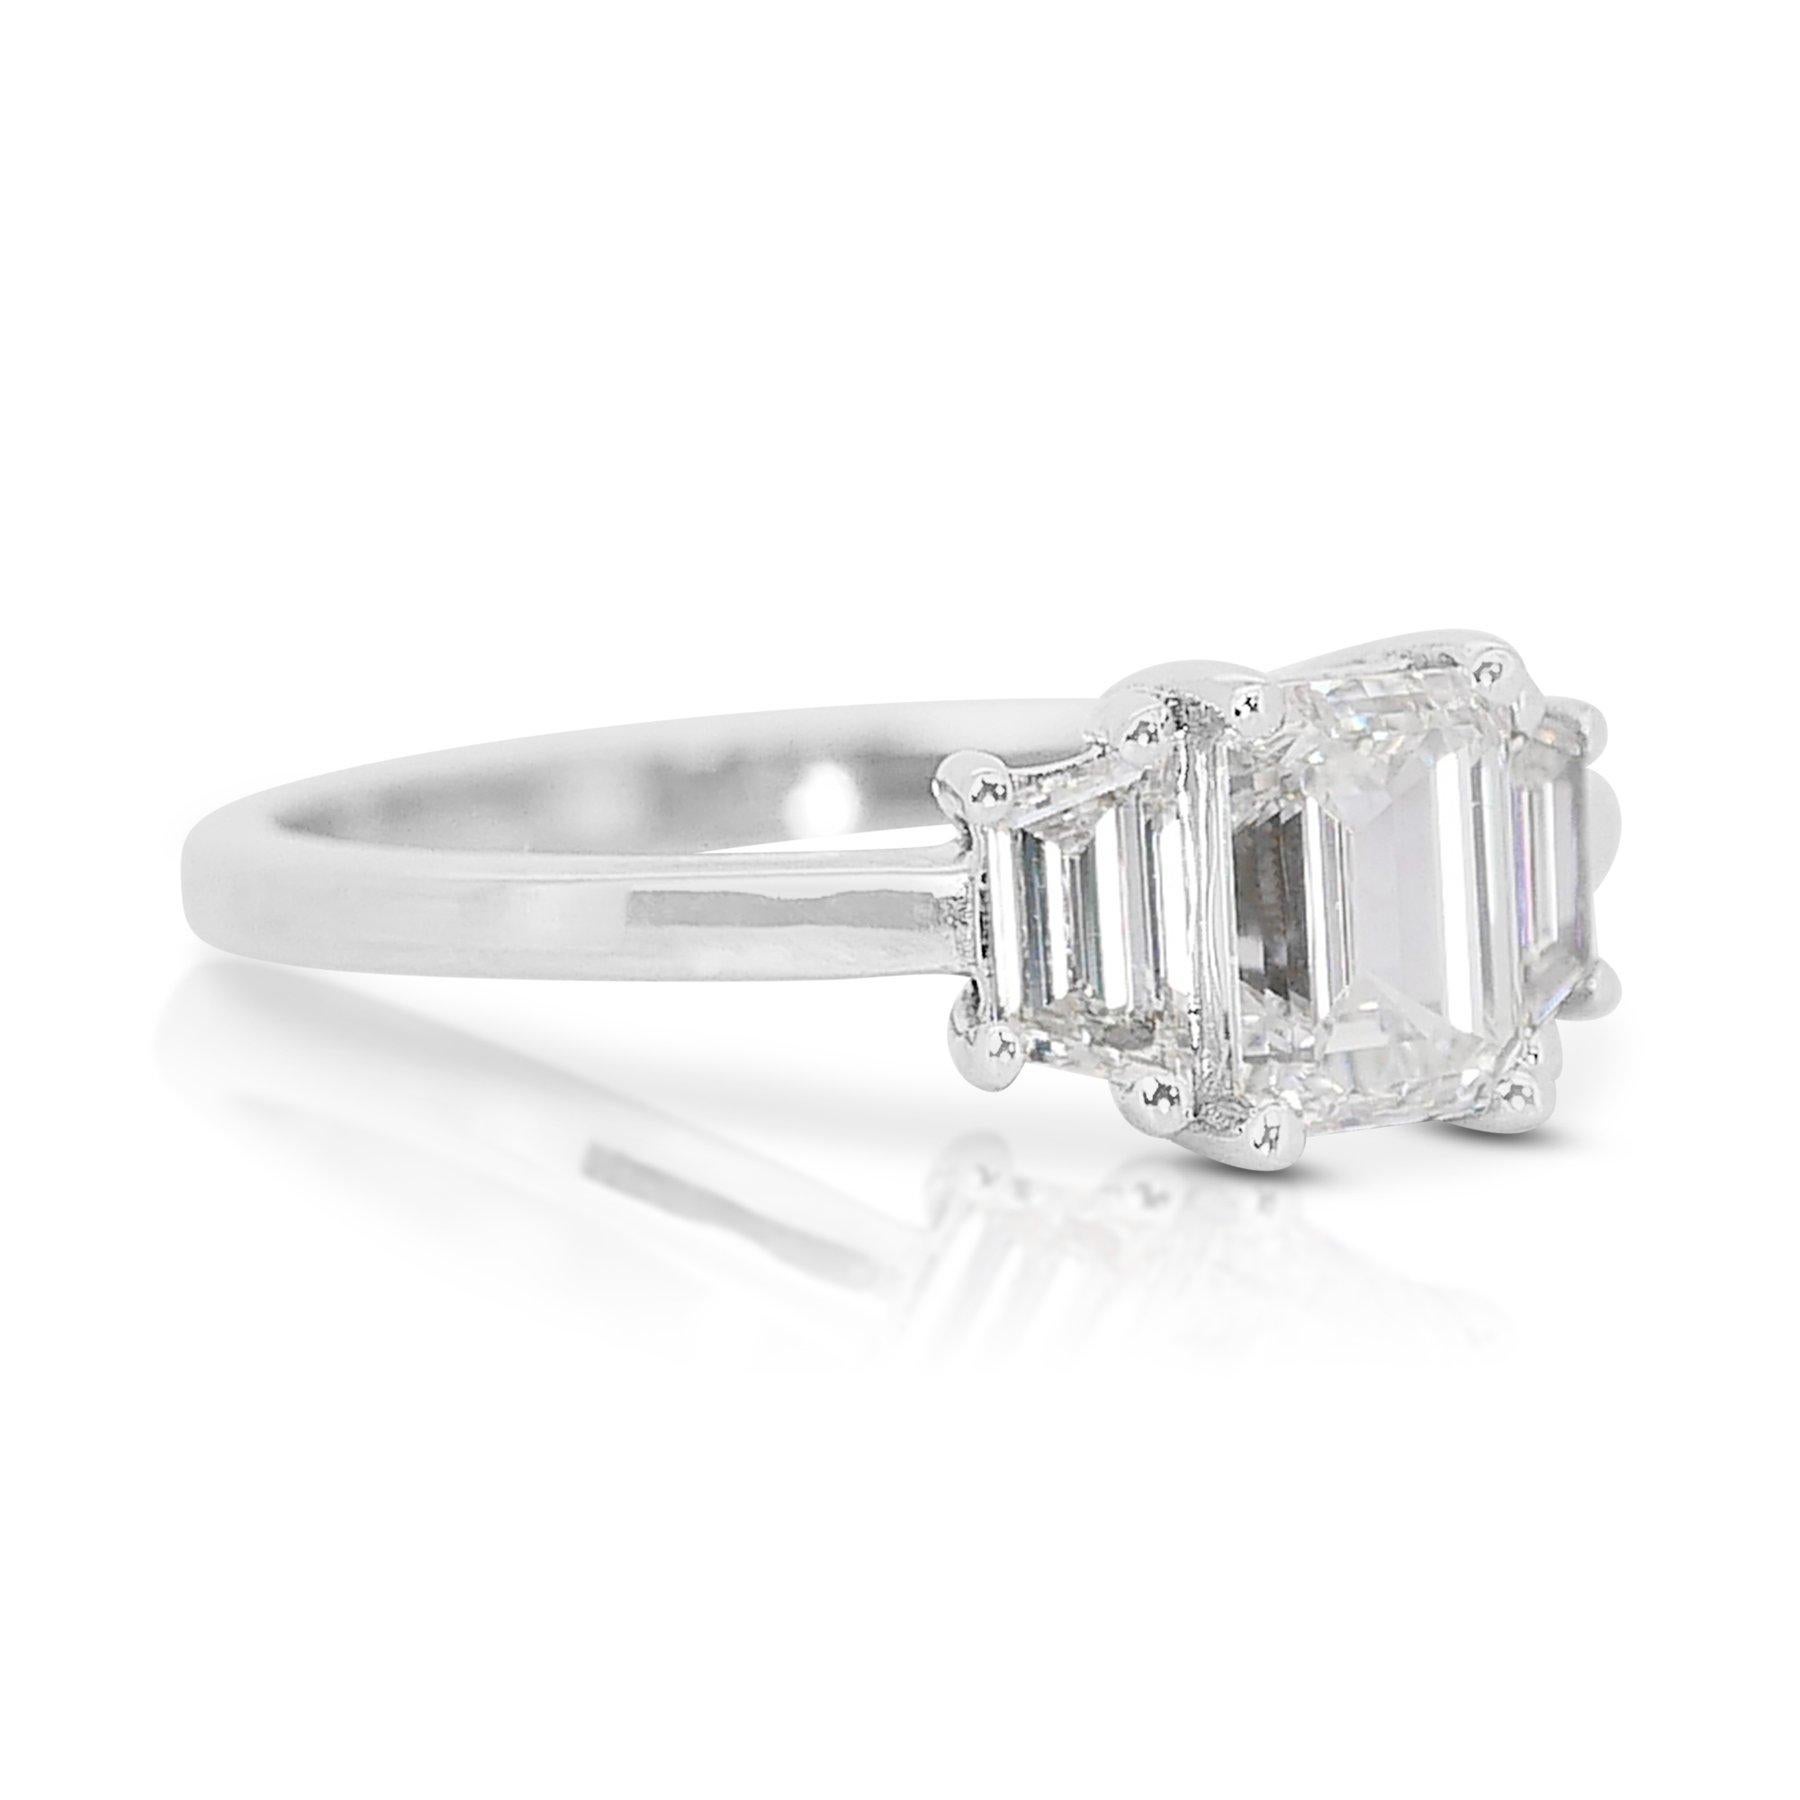 Prächtiger 1,35 Karat Diamant- 3-Stein-Ring aus 18 Karat Weißgold - GIA zertifiziert

Ein fesselnder Diamantring aus 18 Karat Weißgold mit einem atemberaubenden 1,00-Karat-Diamanten im Smaragdschliff als Herzstück. Ergänzt wird der zentrale Diamant